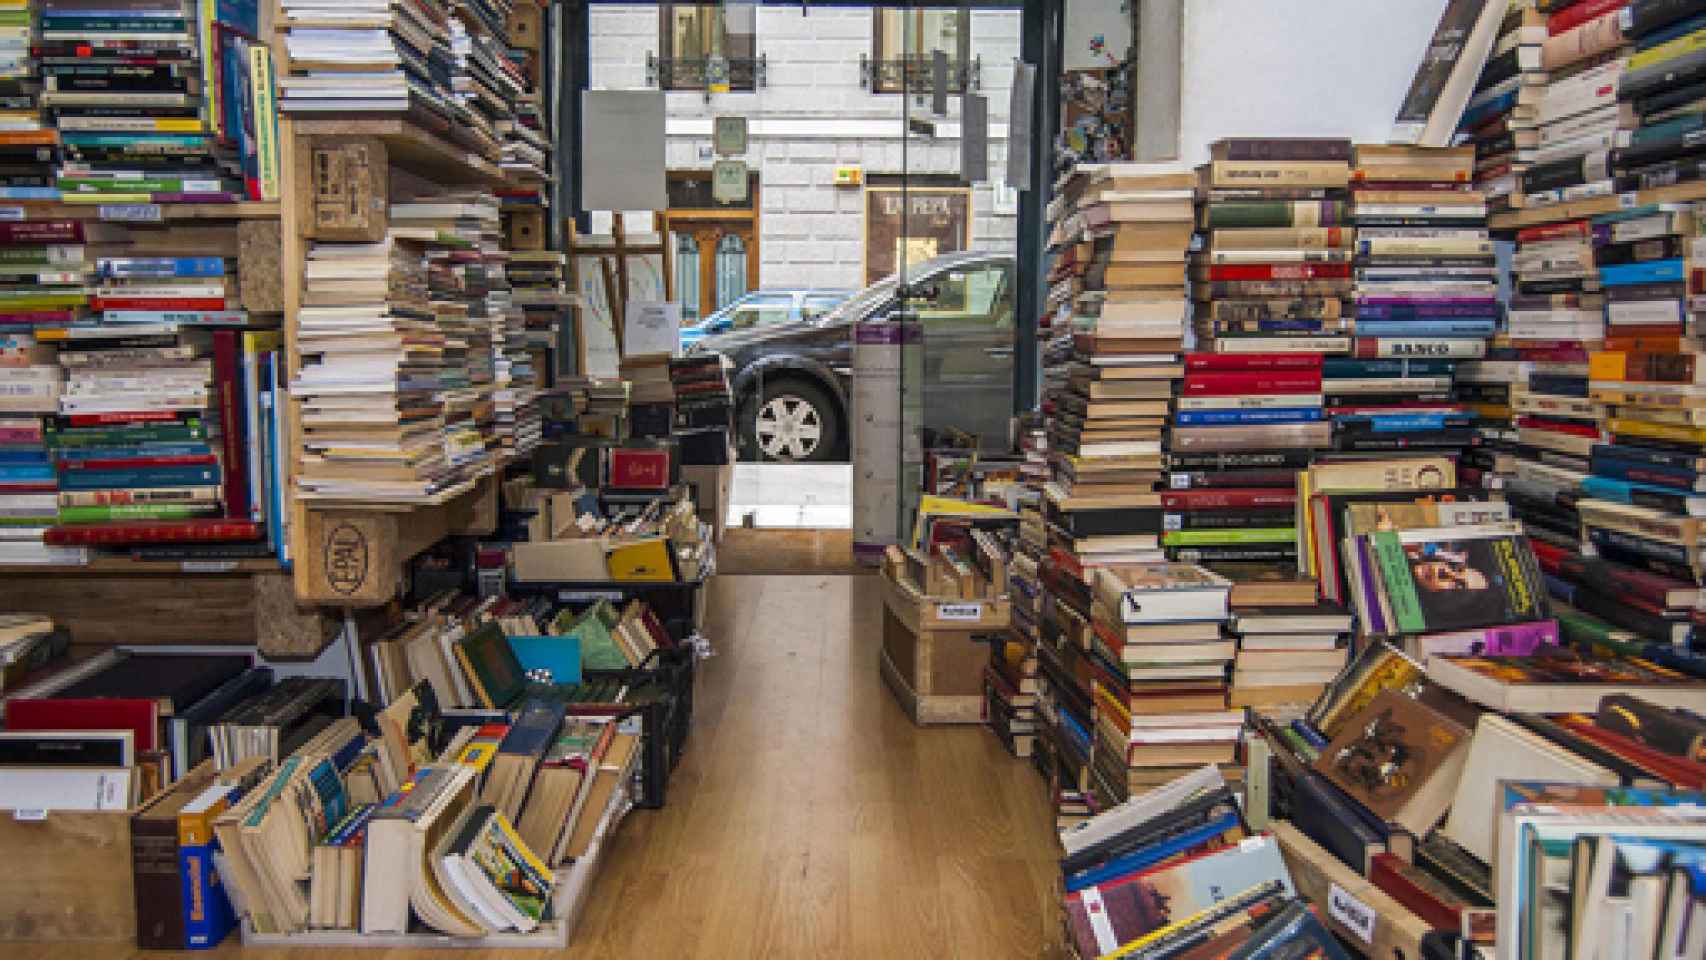 Image: Sube la venta de libros, baja la lectura